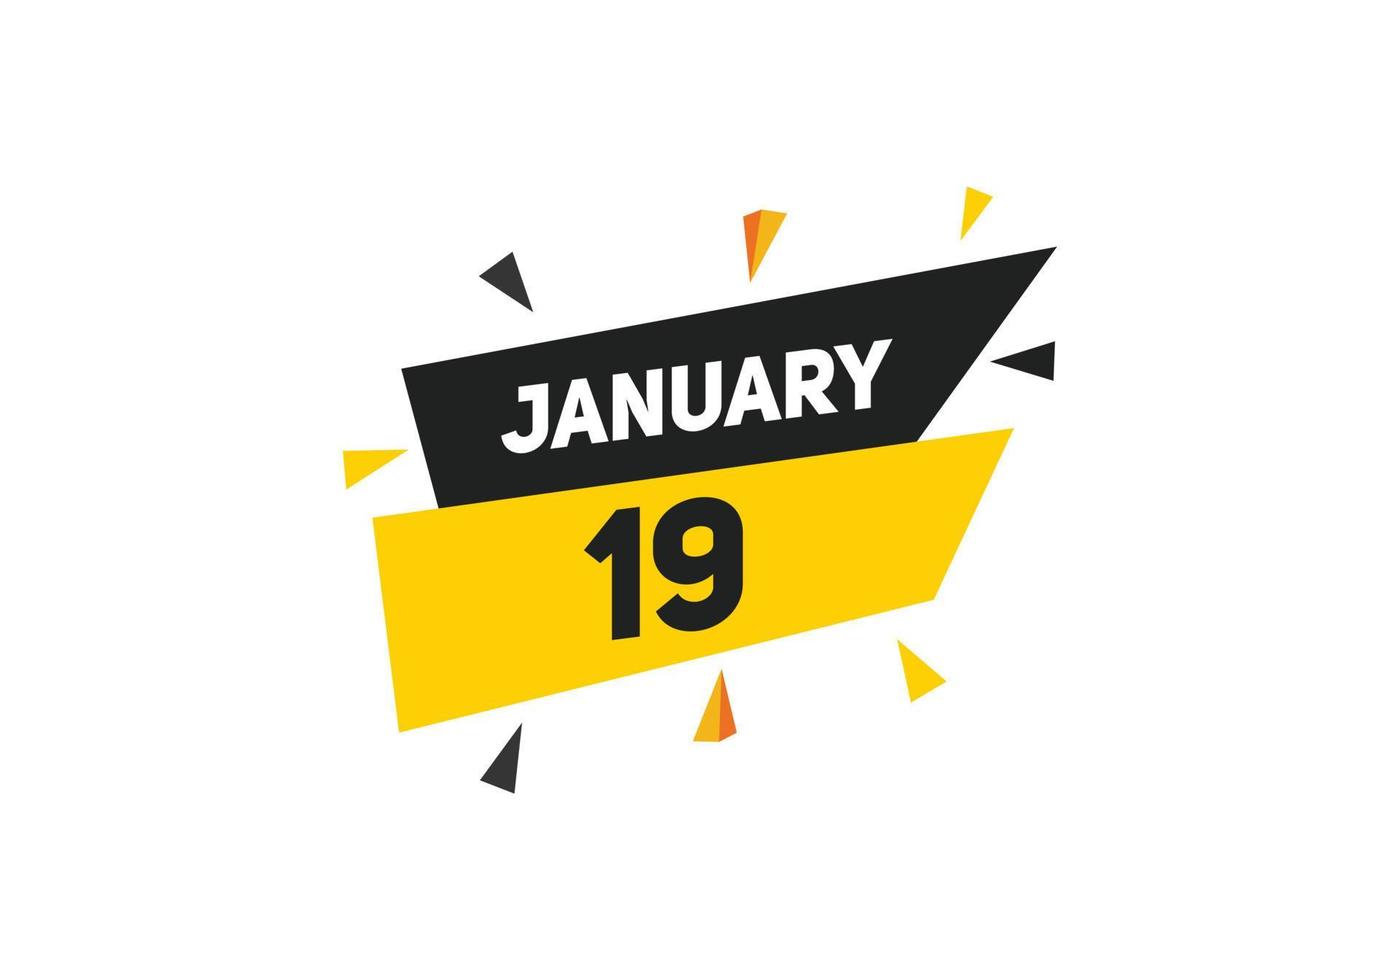 januari 19 kalender påminnelse. 19:e januari dagligen kalender ikon mall. kalender 19:e januari ikon design mall. vektor illustration